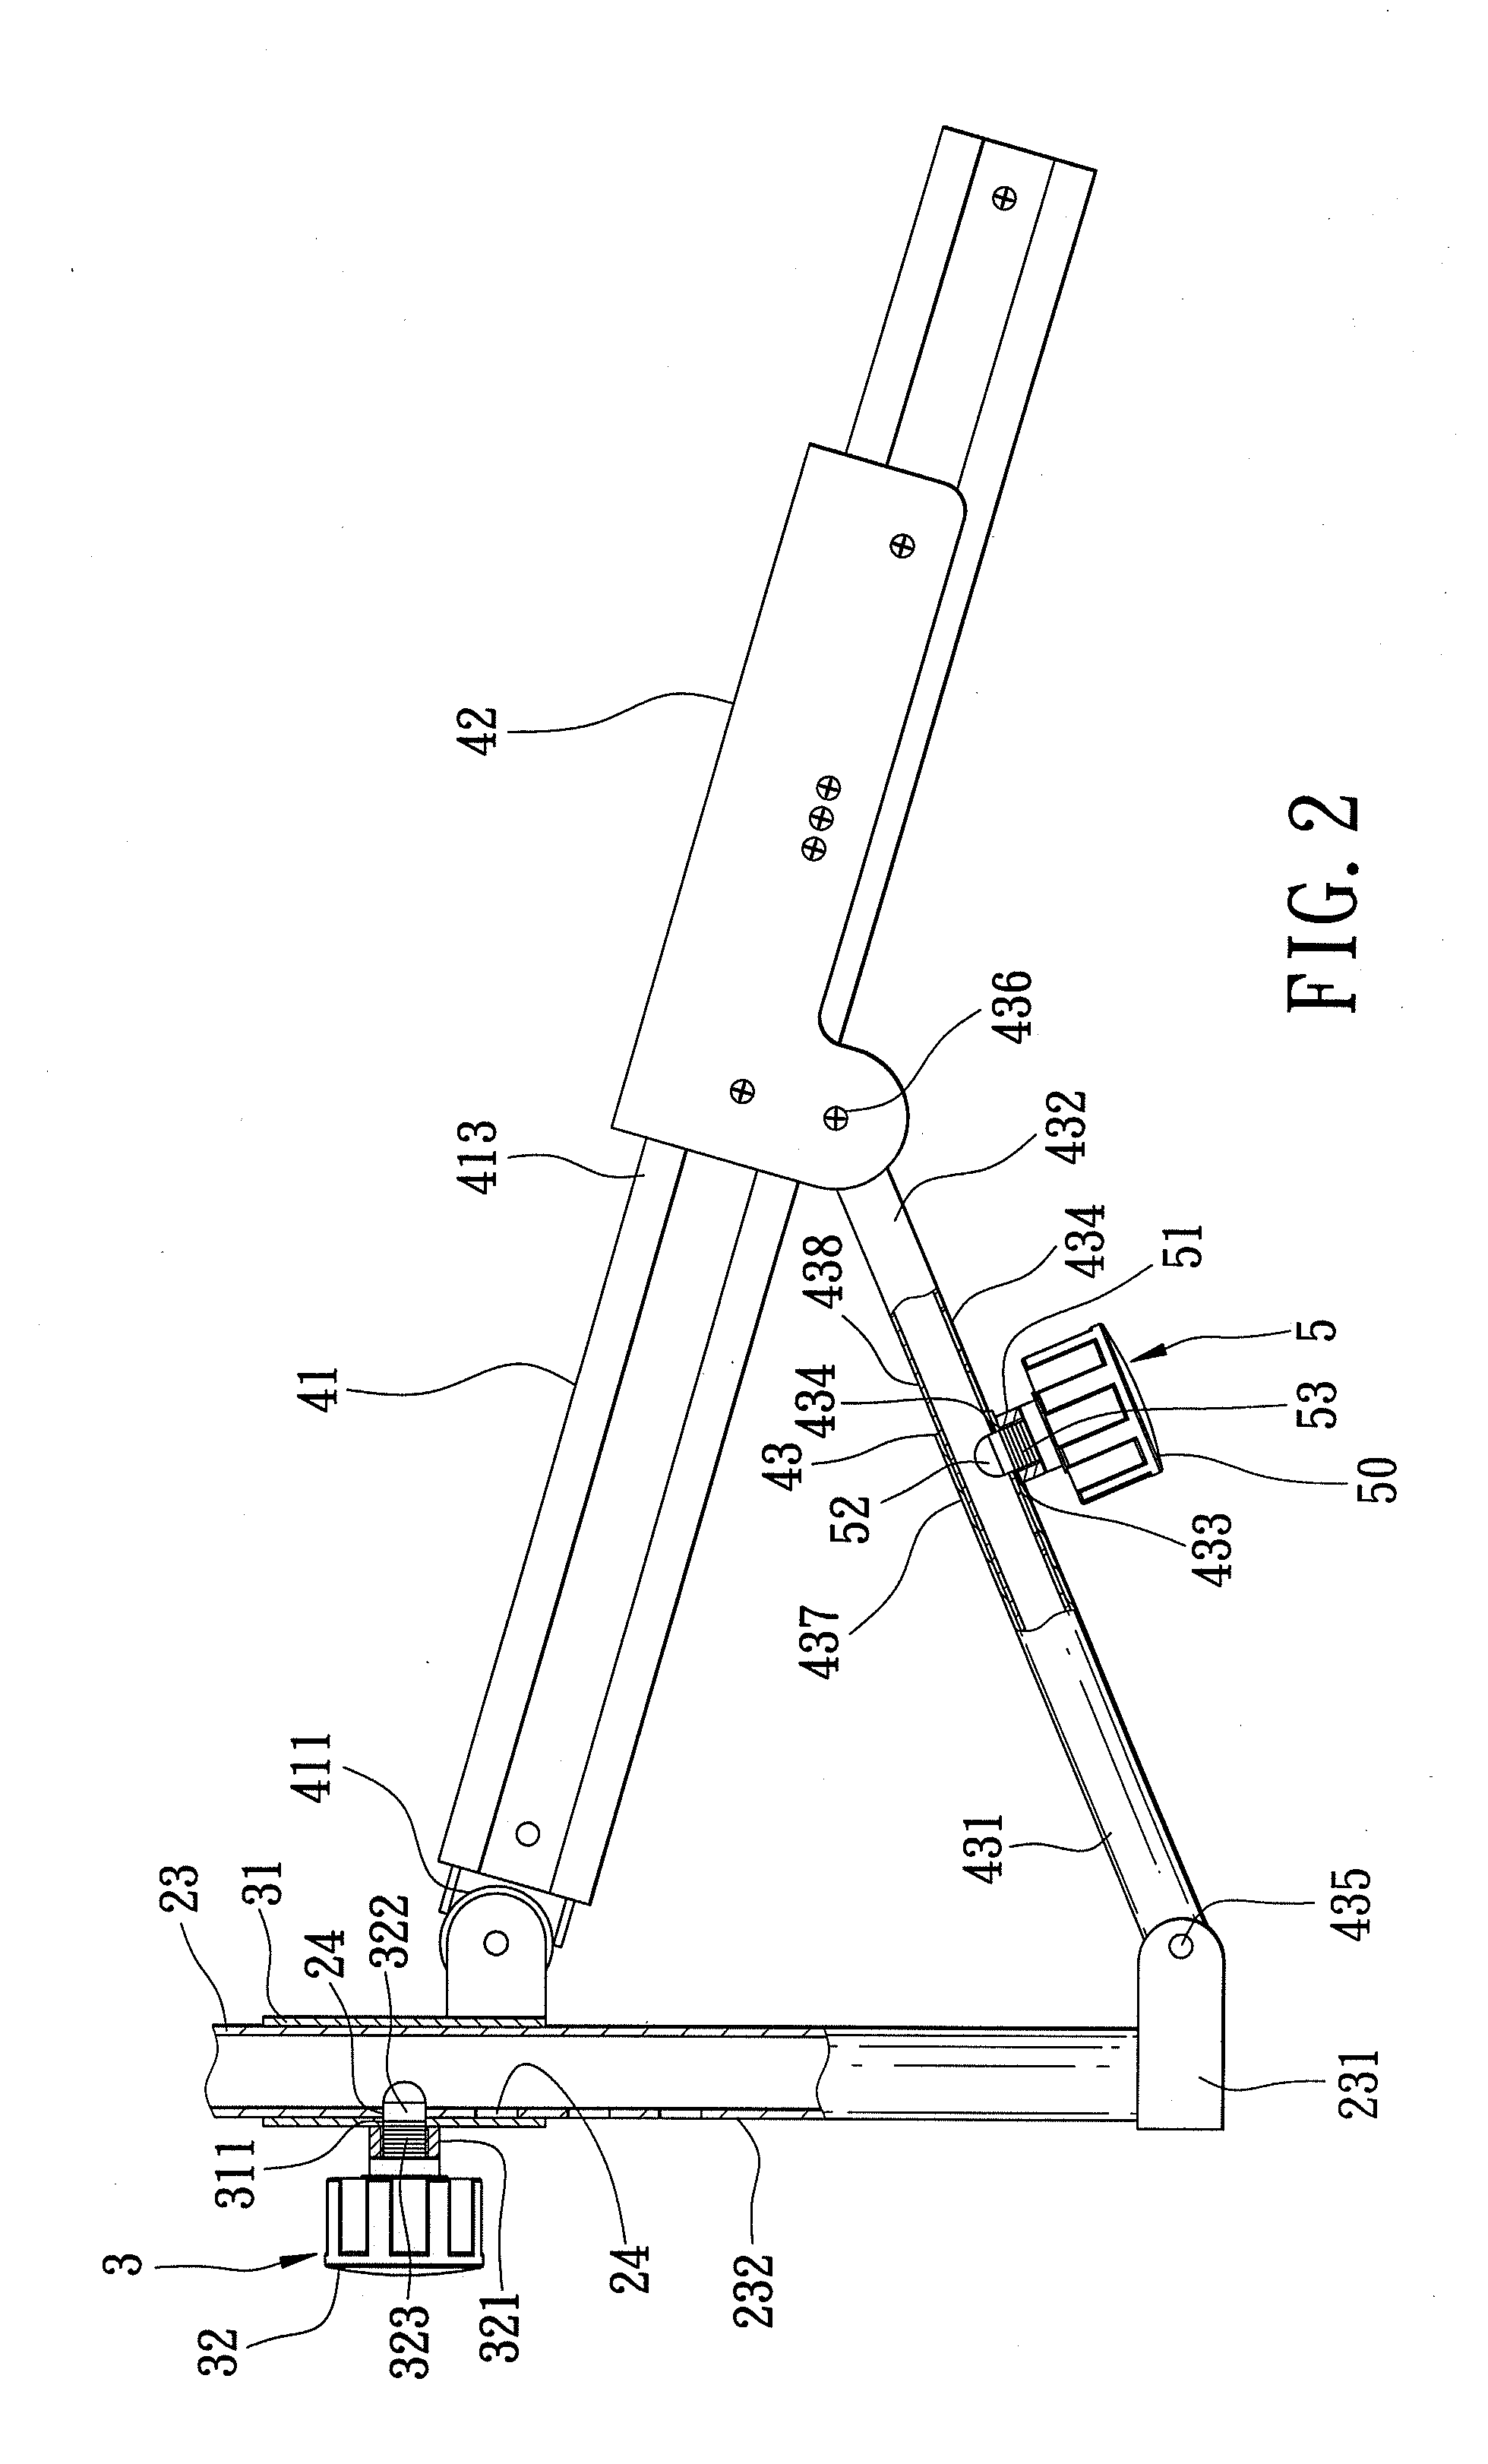 Elliptical exercise apparatus